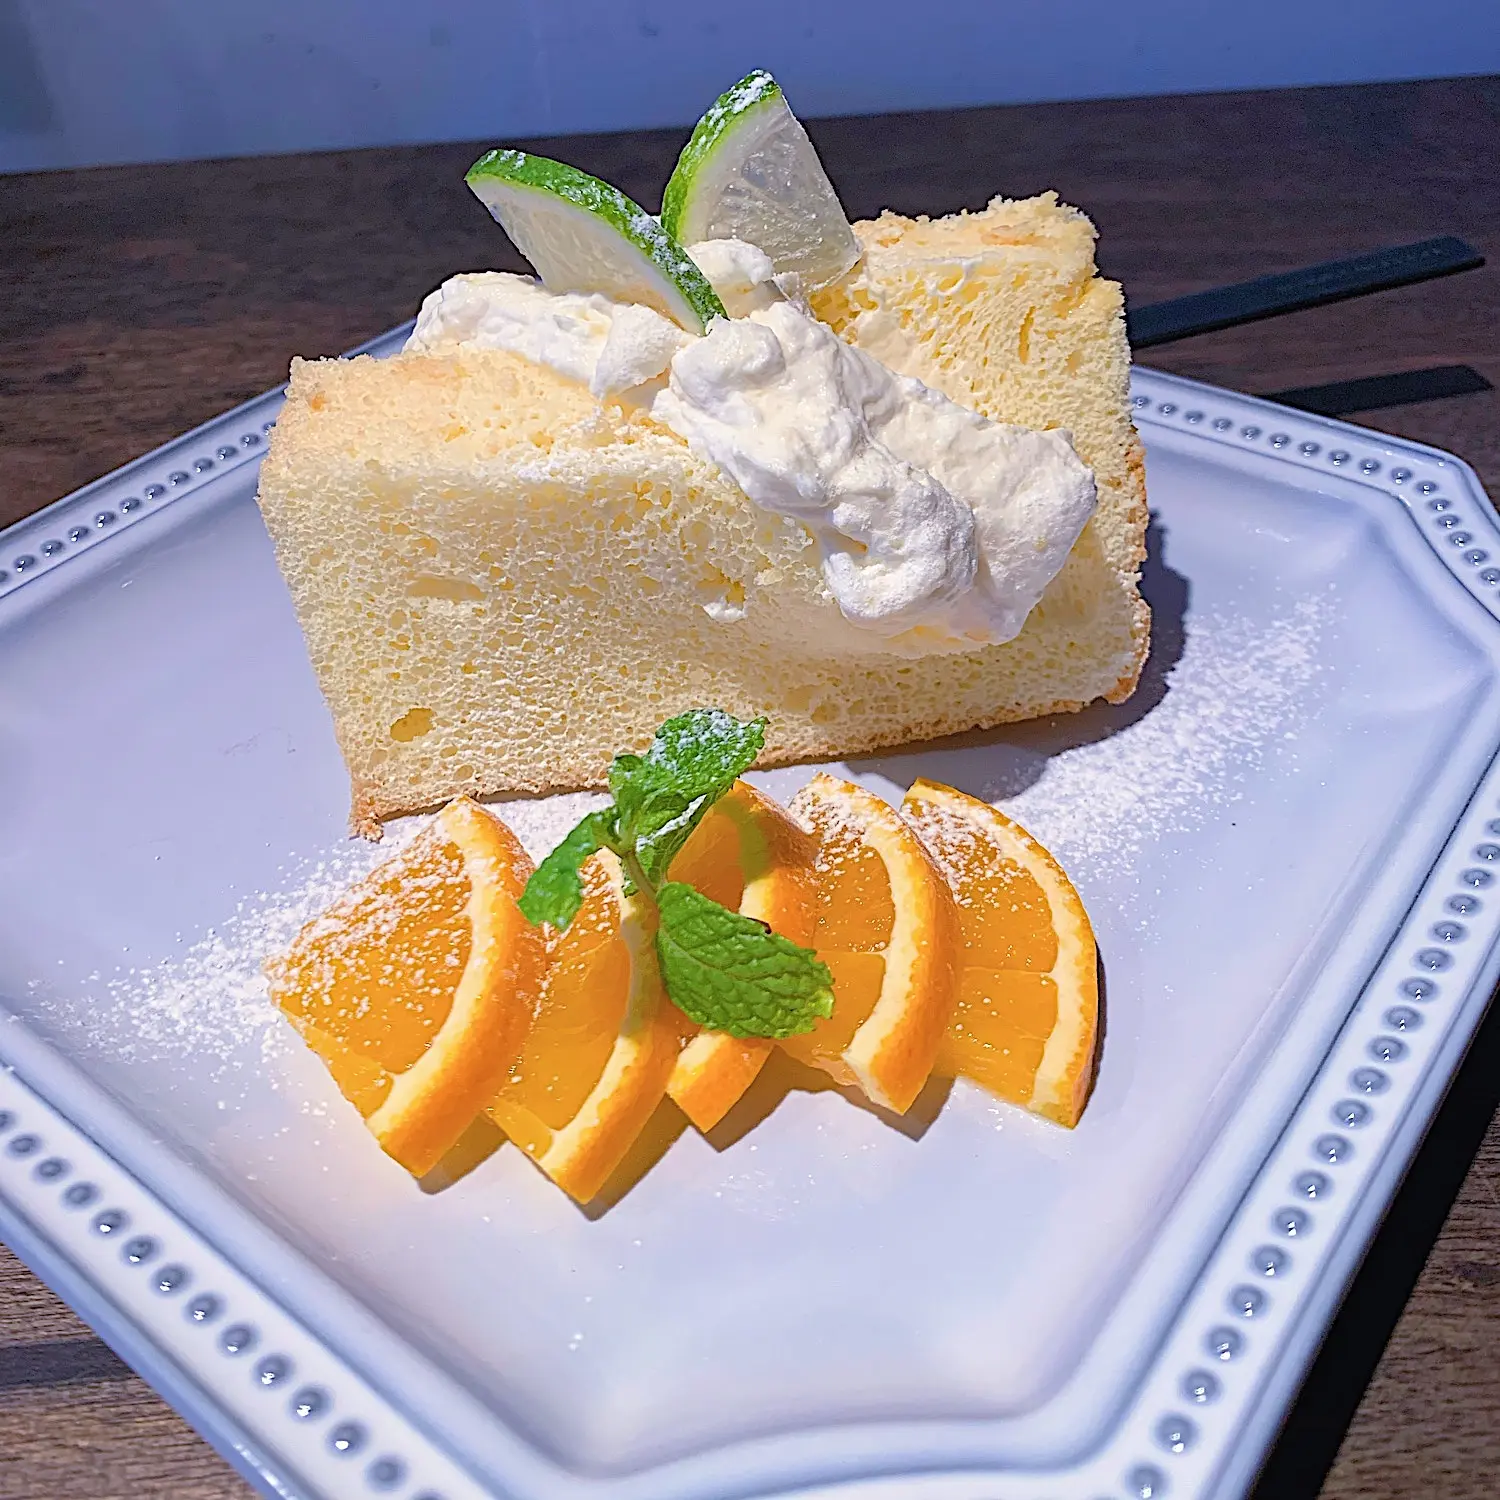 シフォンケーキ専門店 Cafe Slikの無添加シフォンケーキが美味しすぎる Moreインフルエンサーズブログ Daily More